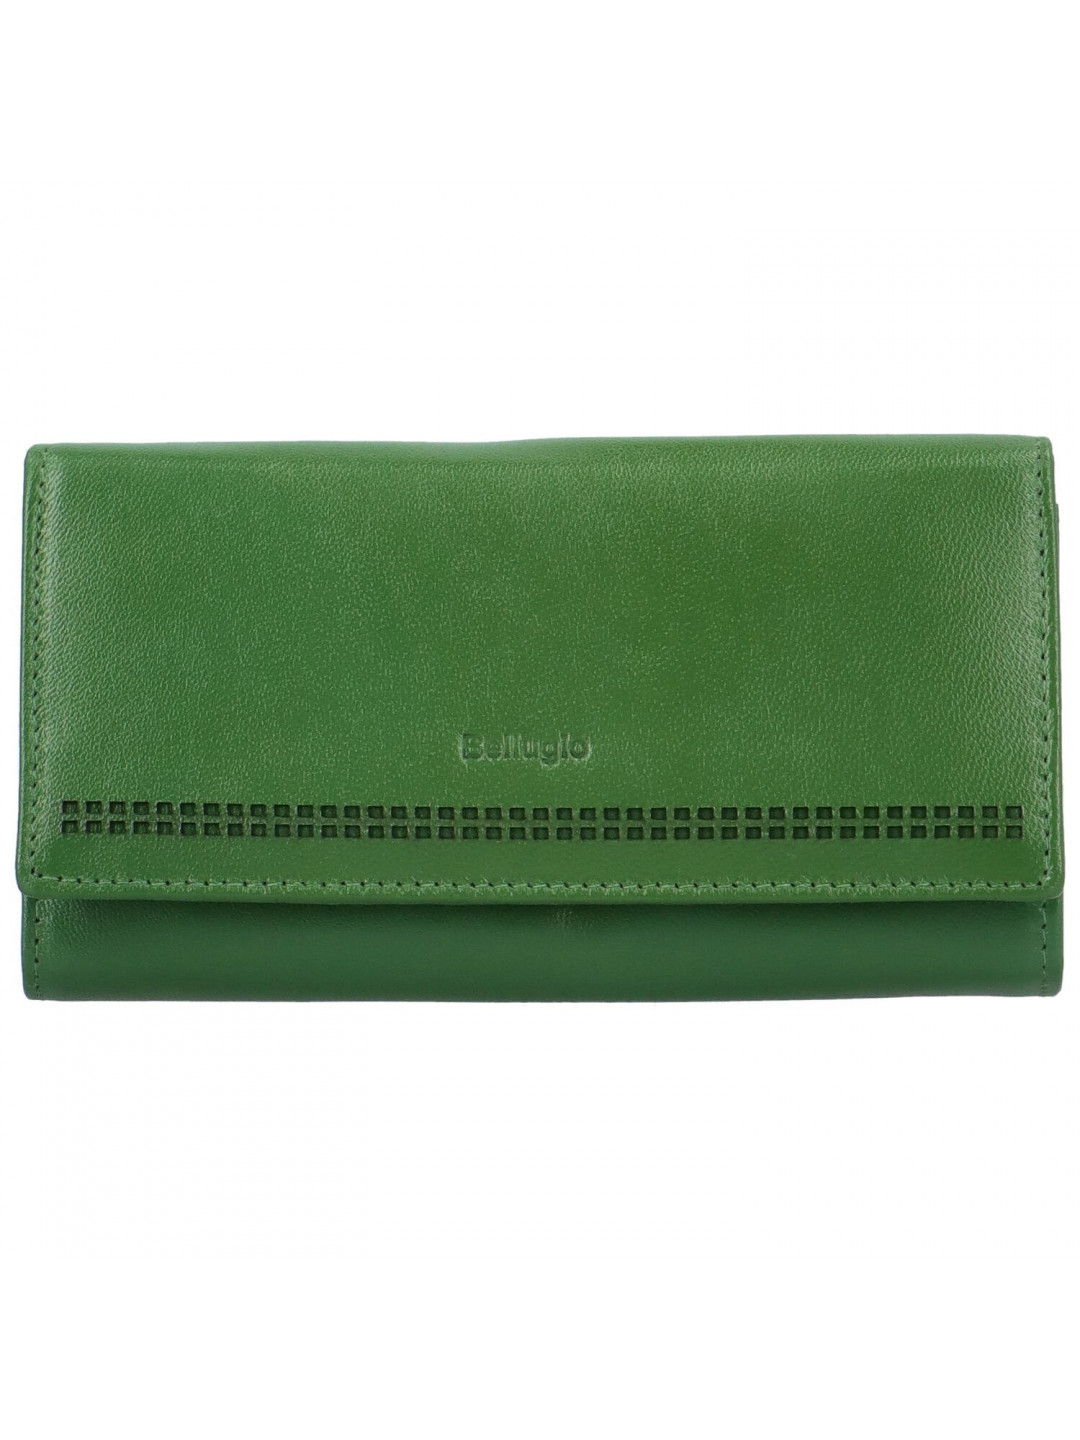 Dámská kožená peněženka Bellugio Nariela tmavě zelená